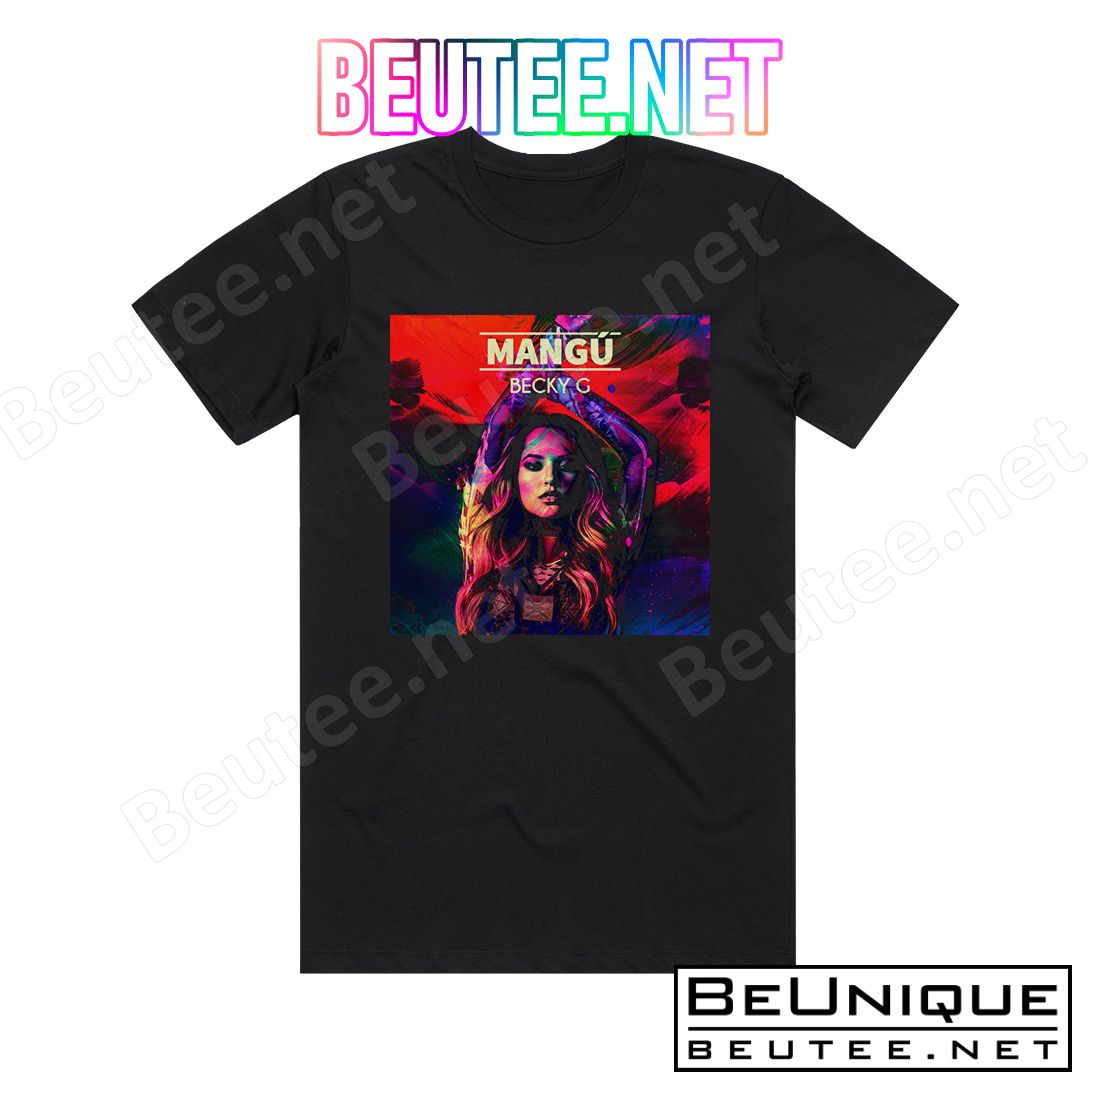 Becky G Mang Album Cover T-Shirt